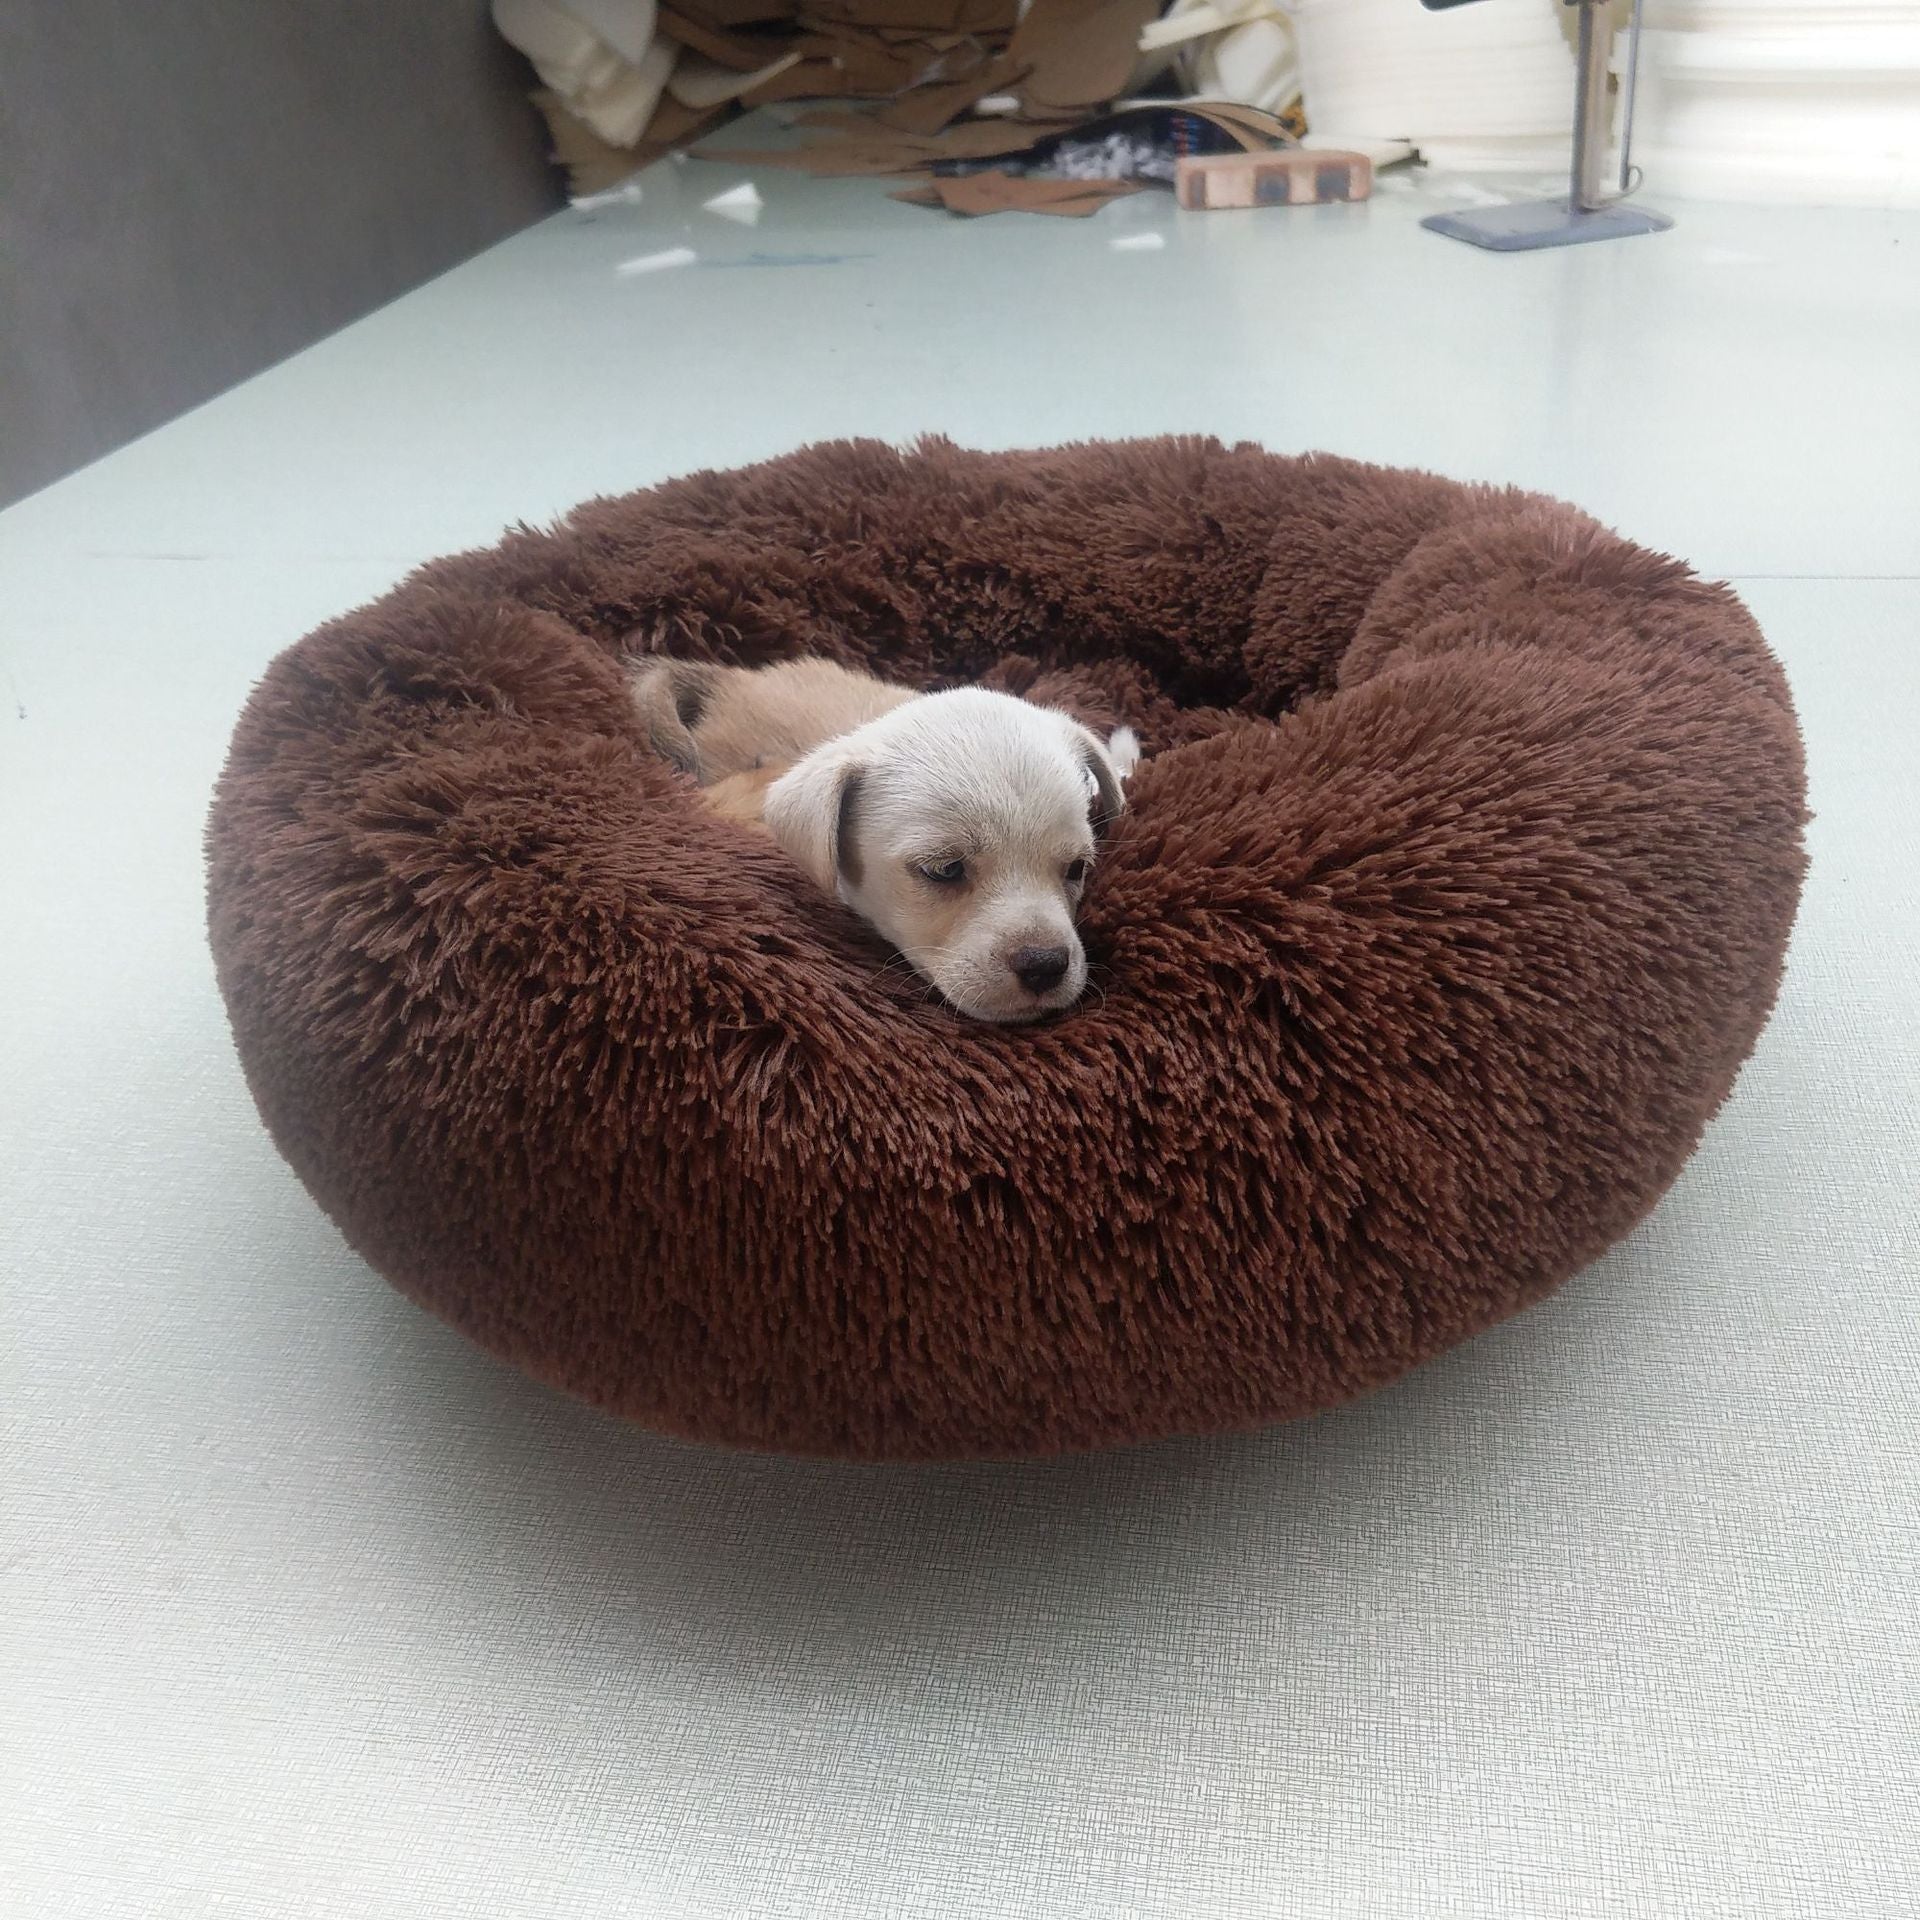 Orthopedic Dog Bed Comfortable Donut Cuddler Round Dog Bed Ultra Soft Washable Dog and Cat Cushion Pet Bed Cama Para Cachorro